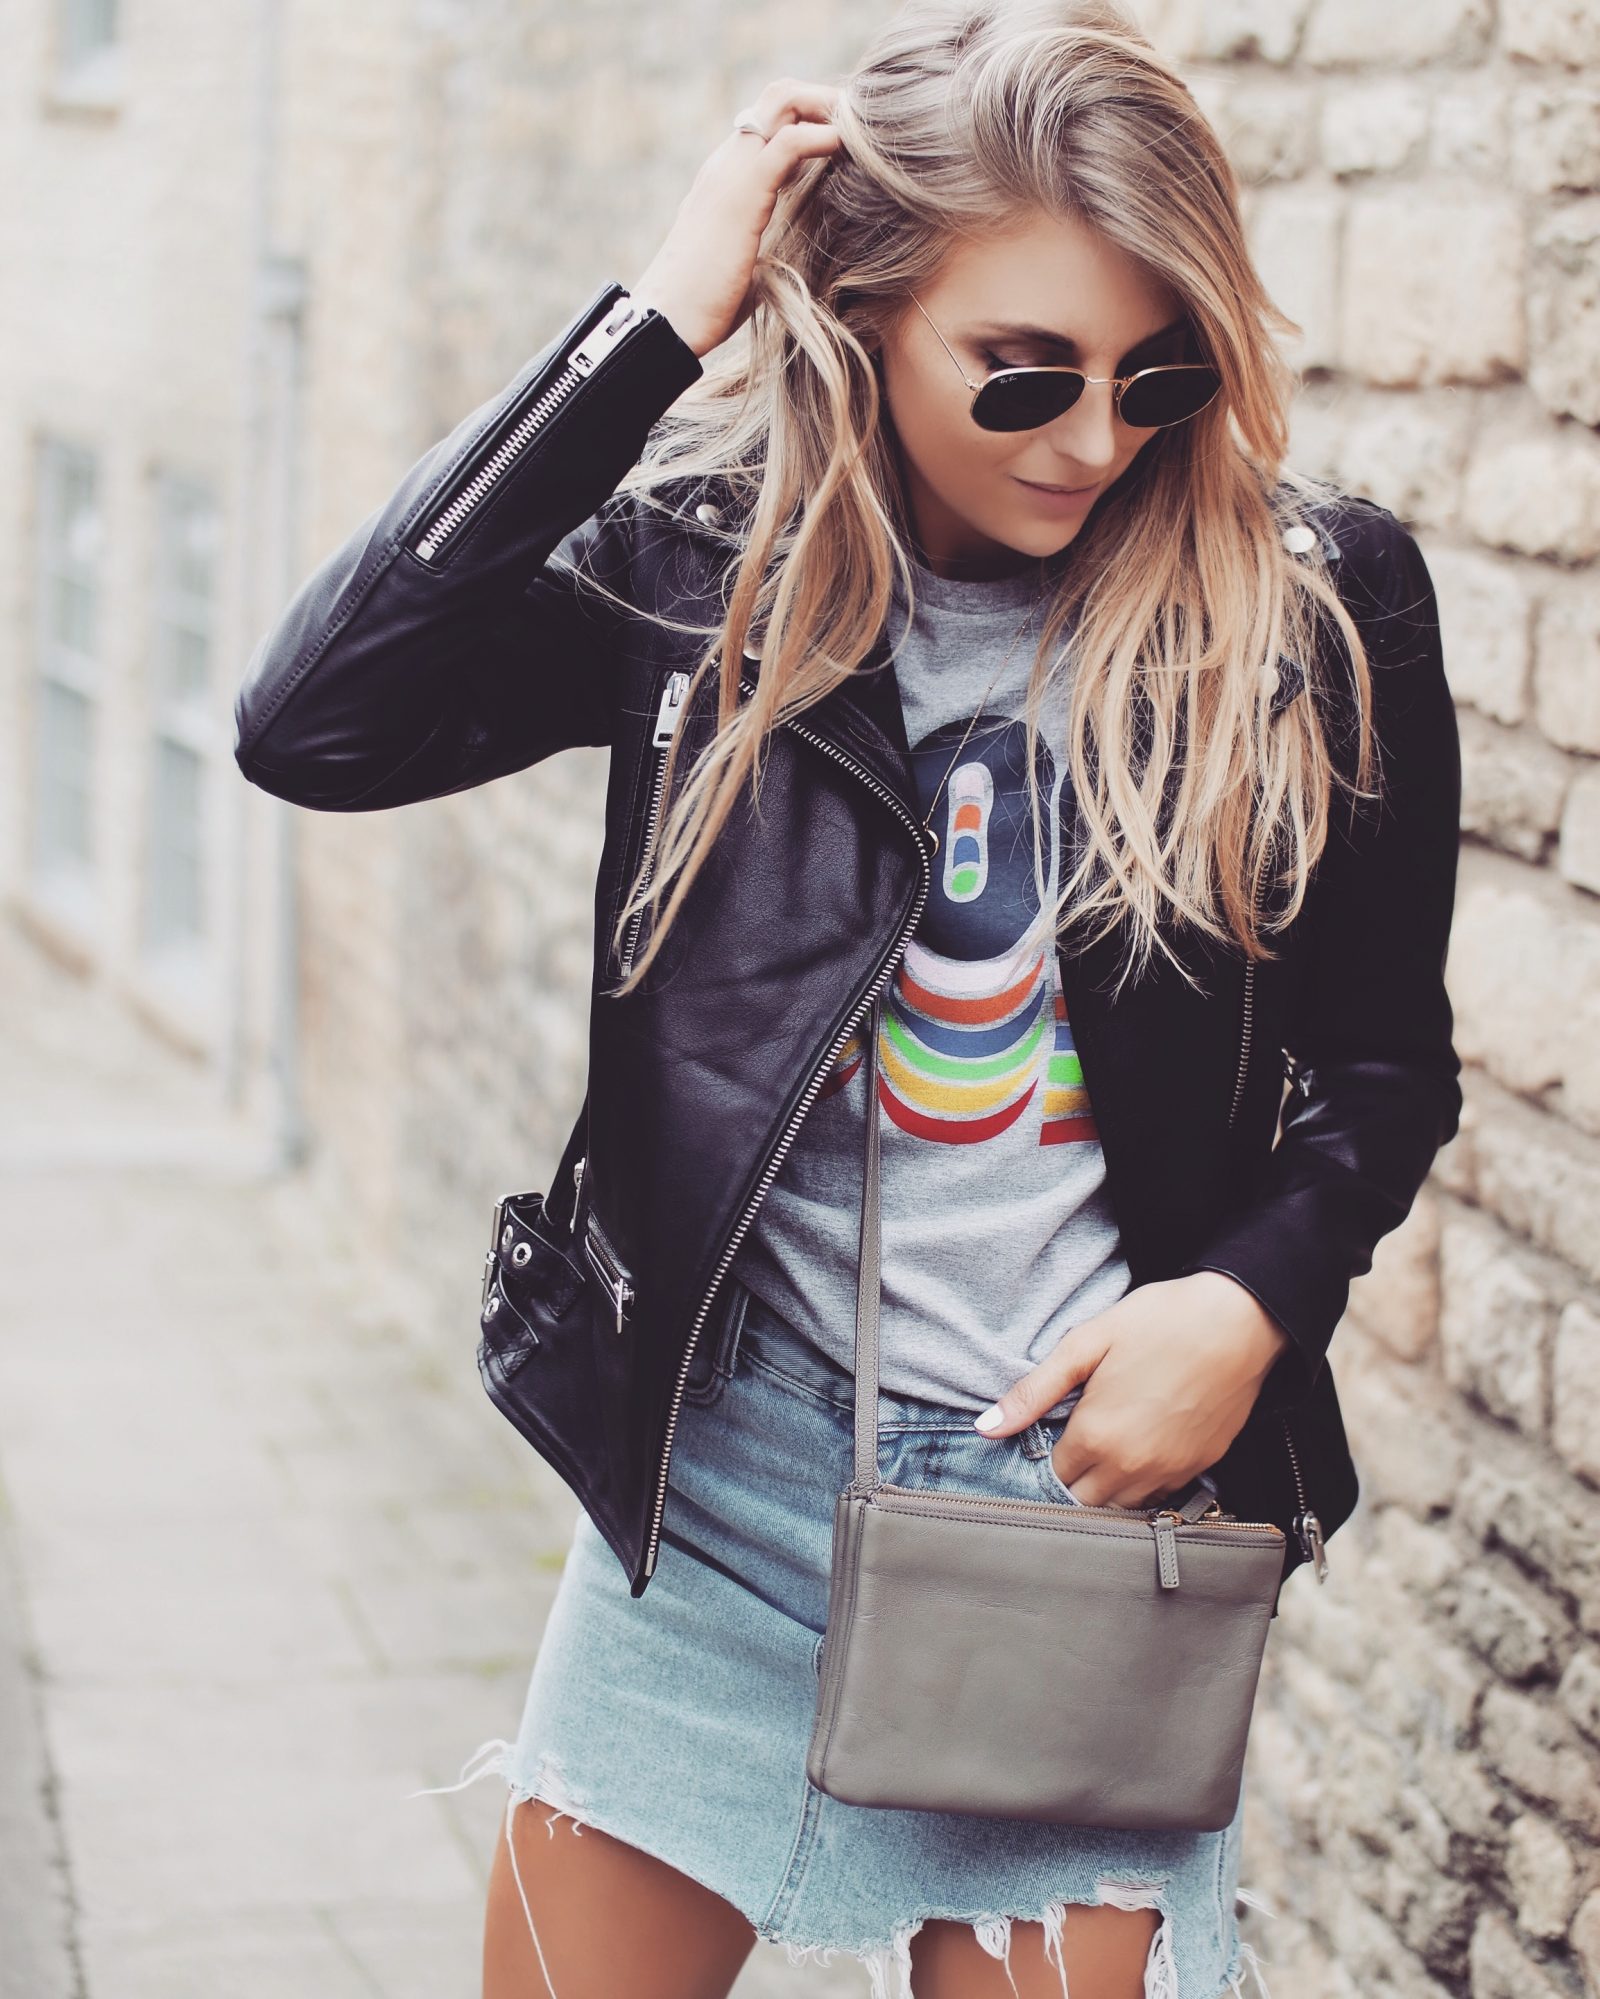 Leather Jacket - Fashion Blogger Street Style